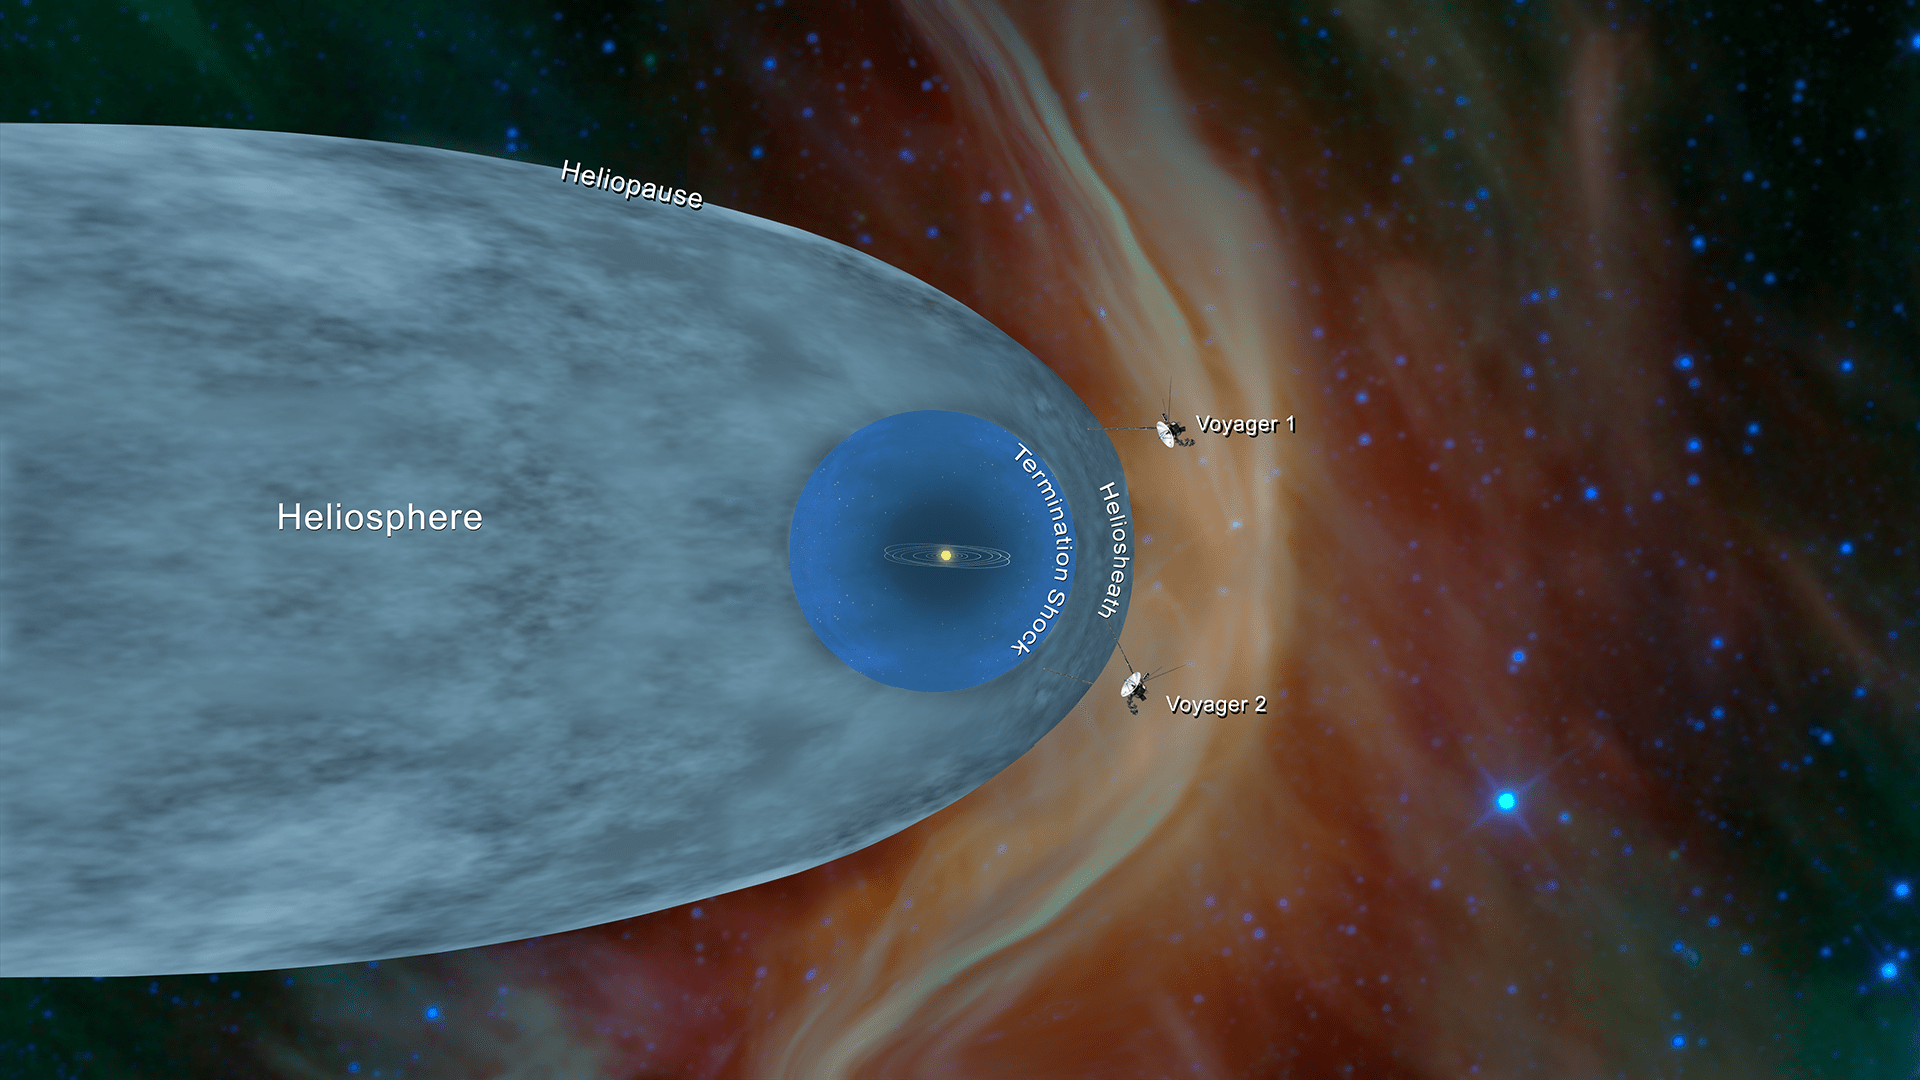 Megszűnt a kapcsolat a Voyager 2-vel